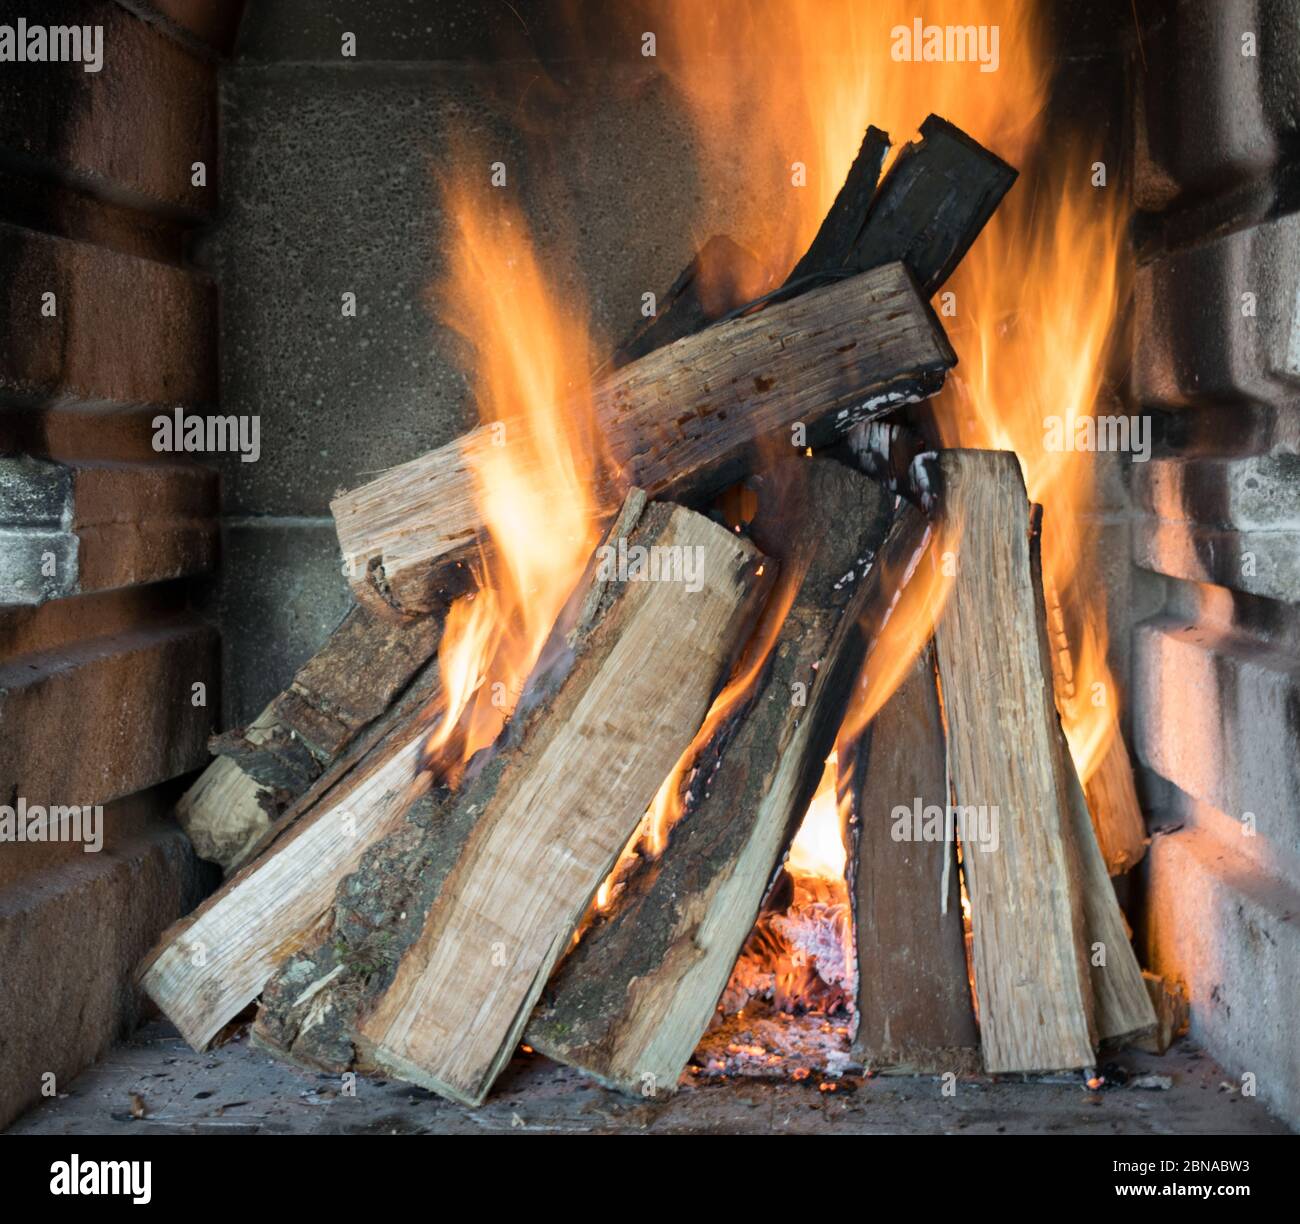 Beautiful shot of burning wood logs creating amazing orange flames Stock Photo